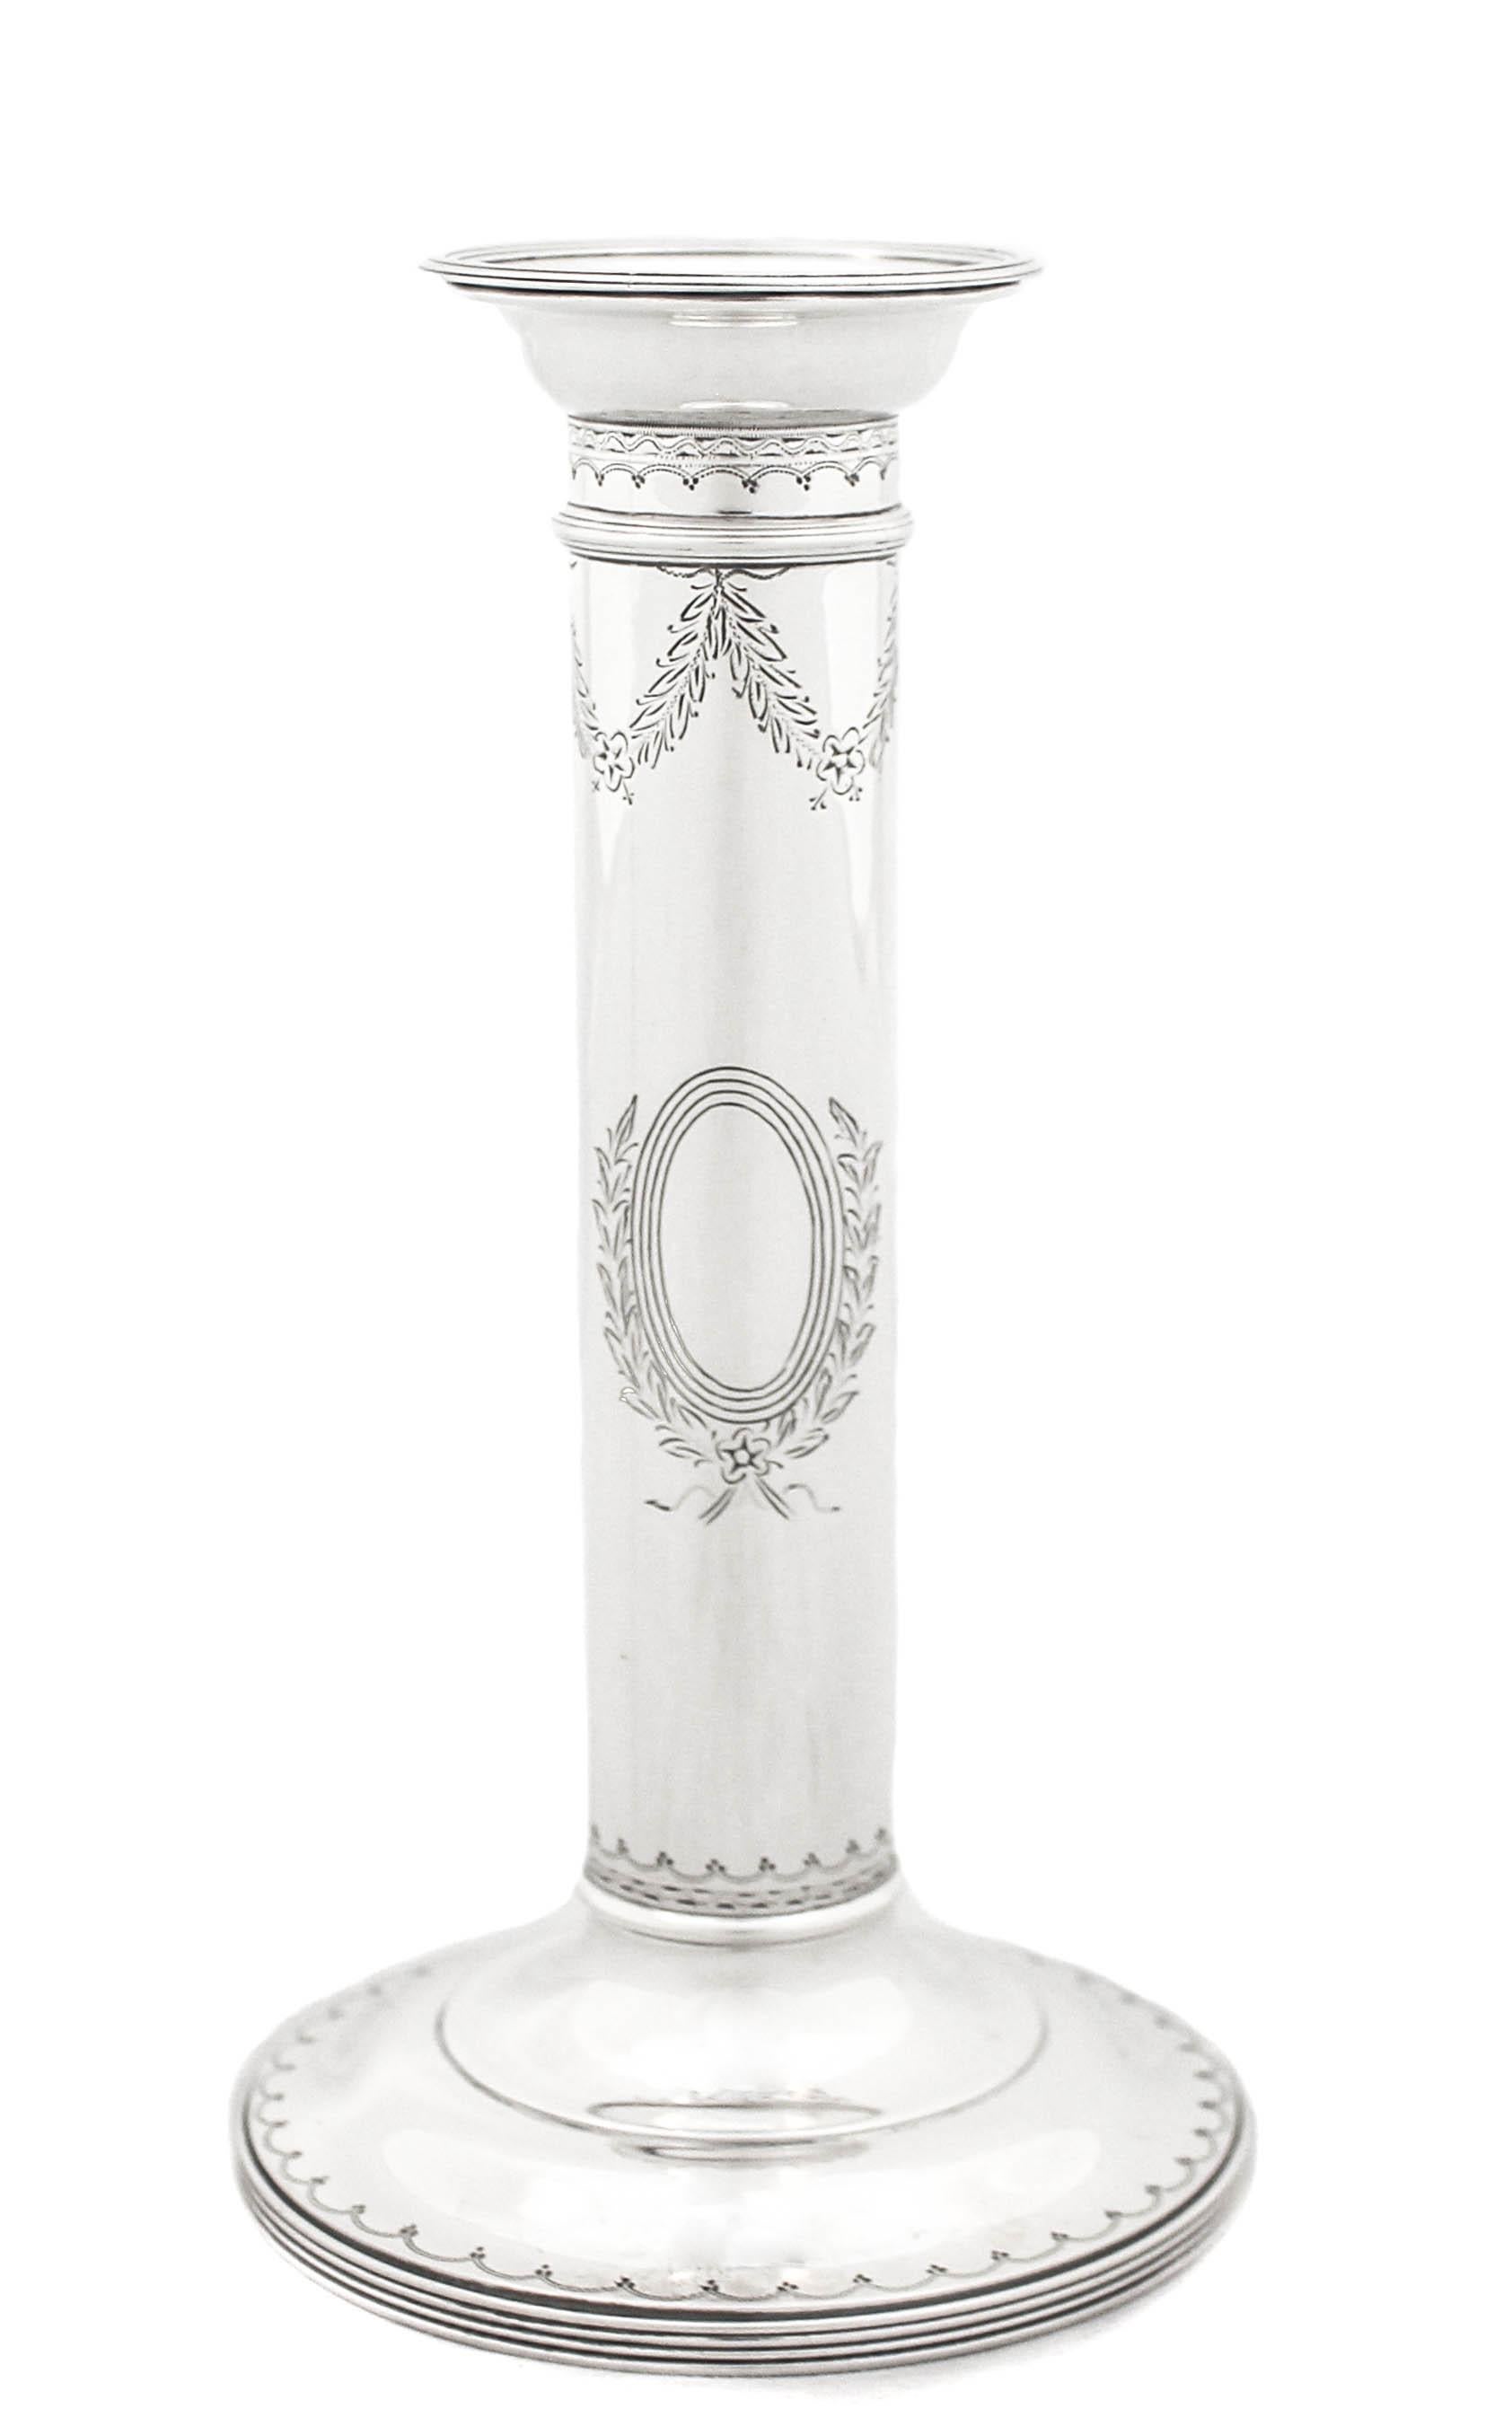 Nous vous proposons une paire de chandeliers en argent sterling de William Durgin.  Ils sont en forme de colonne dans le style toscan. Une colonne toscane ressemble à une colonne dorique, sauf qu'elle n'est pas cannelée.  Il s'agit d'une tige simple